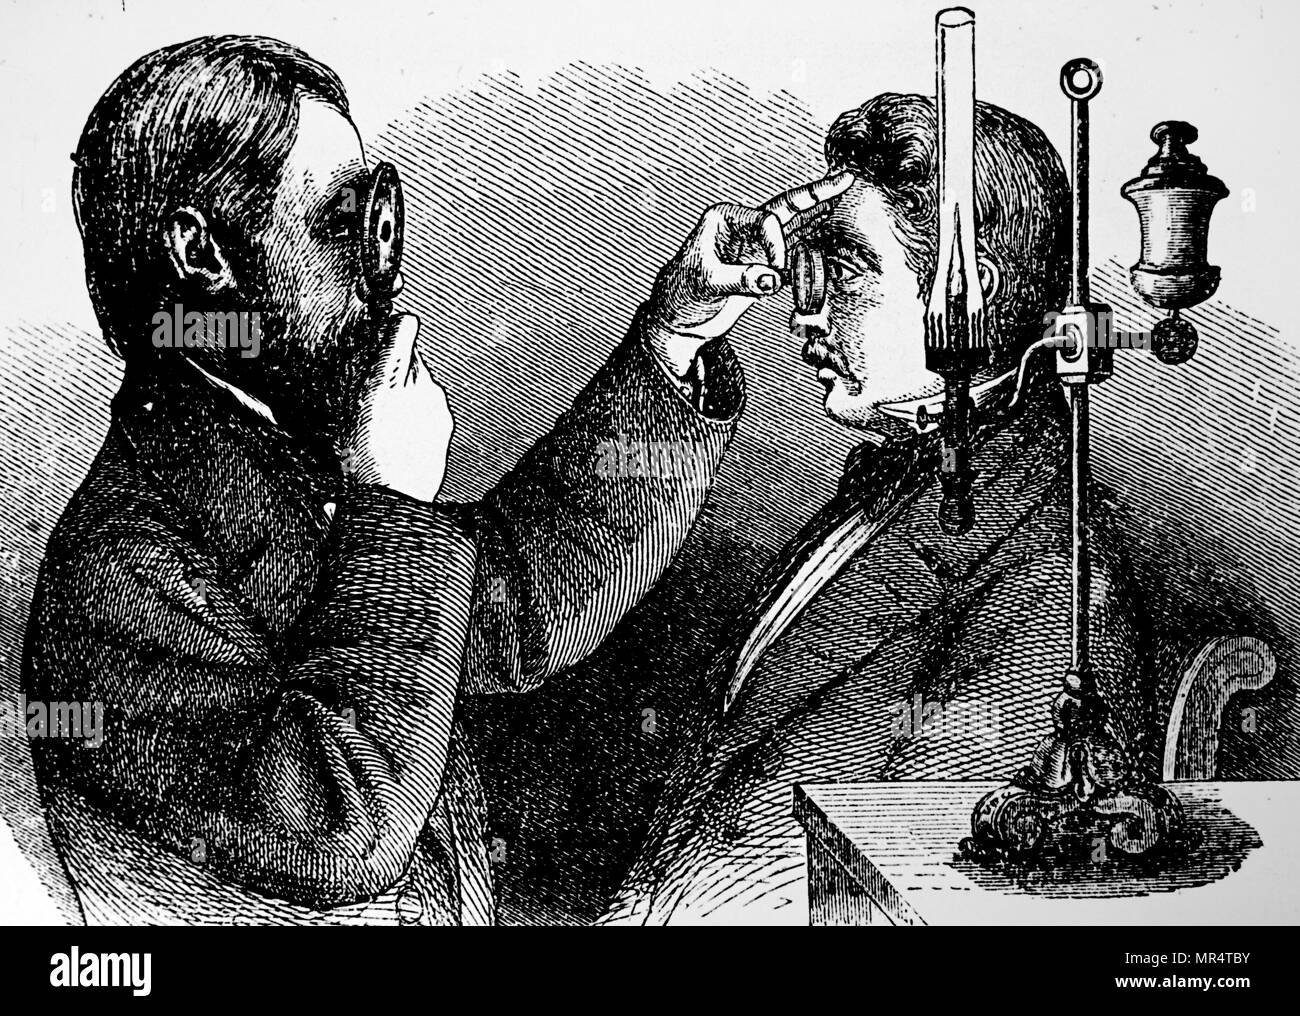 Gravur Darstellung eines Ophthalmoskops im Einsatz. Funduscopy Ophthalmoskopie, auch genannt, ist ein Test, mit dem der Health Professional innerhalb des Augenhintergrundes und anderen Strukturen zu sehen. Die ophthalmoskop wurde von Hermann von Helmholtz (1821-1894) Der deutsche Arzt und Physiker erfunden. Vom 19. Jahrhundert Stockfoto